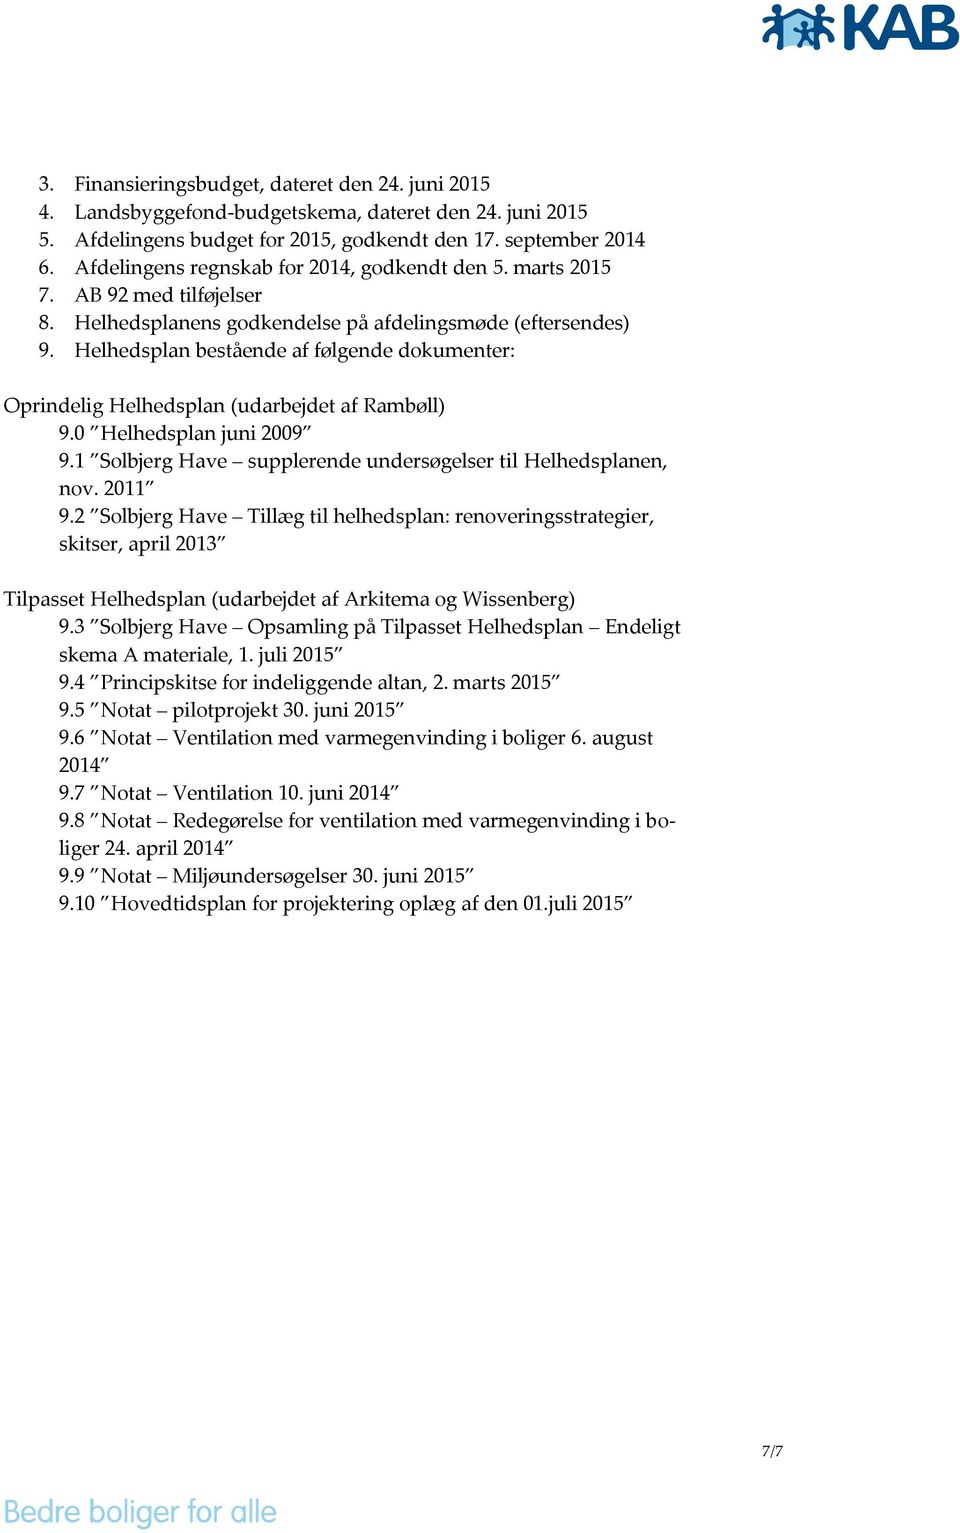 Helhedsplan bestående af følgende dokumenter: Oprindelig Helhedsplan (udarbejdet af Rambøll) 9.0 Helhedsplan juni 2009 9.1 Solbjerg Have supplerende undersøgelser til Helhedsplanen, nov. 2011 9.